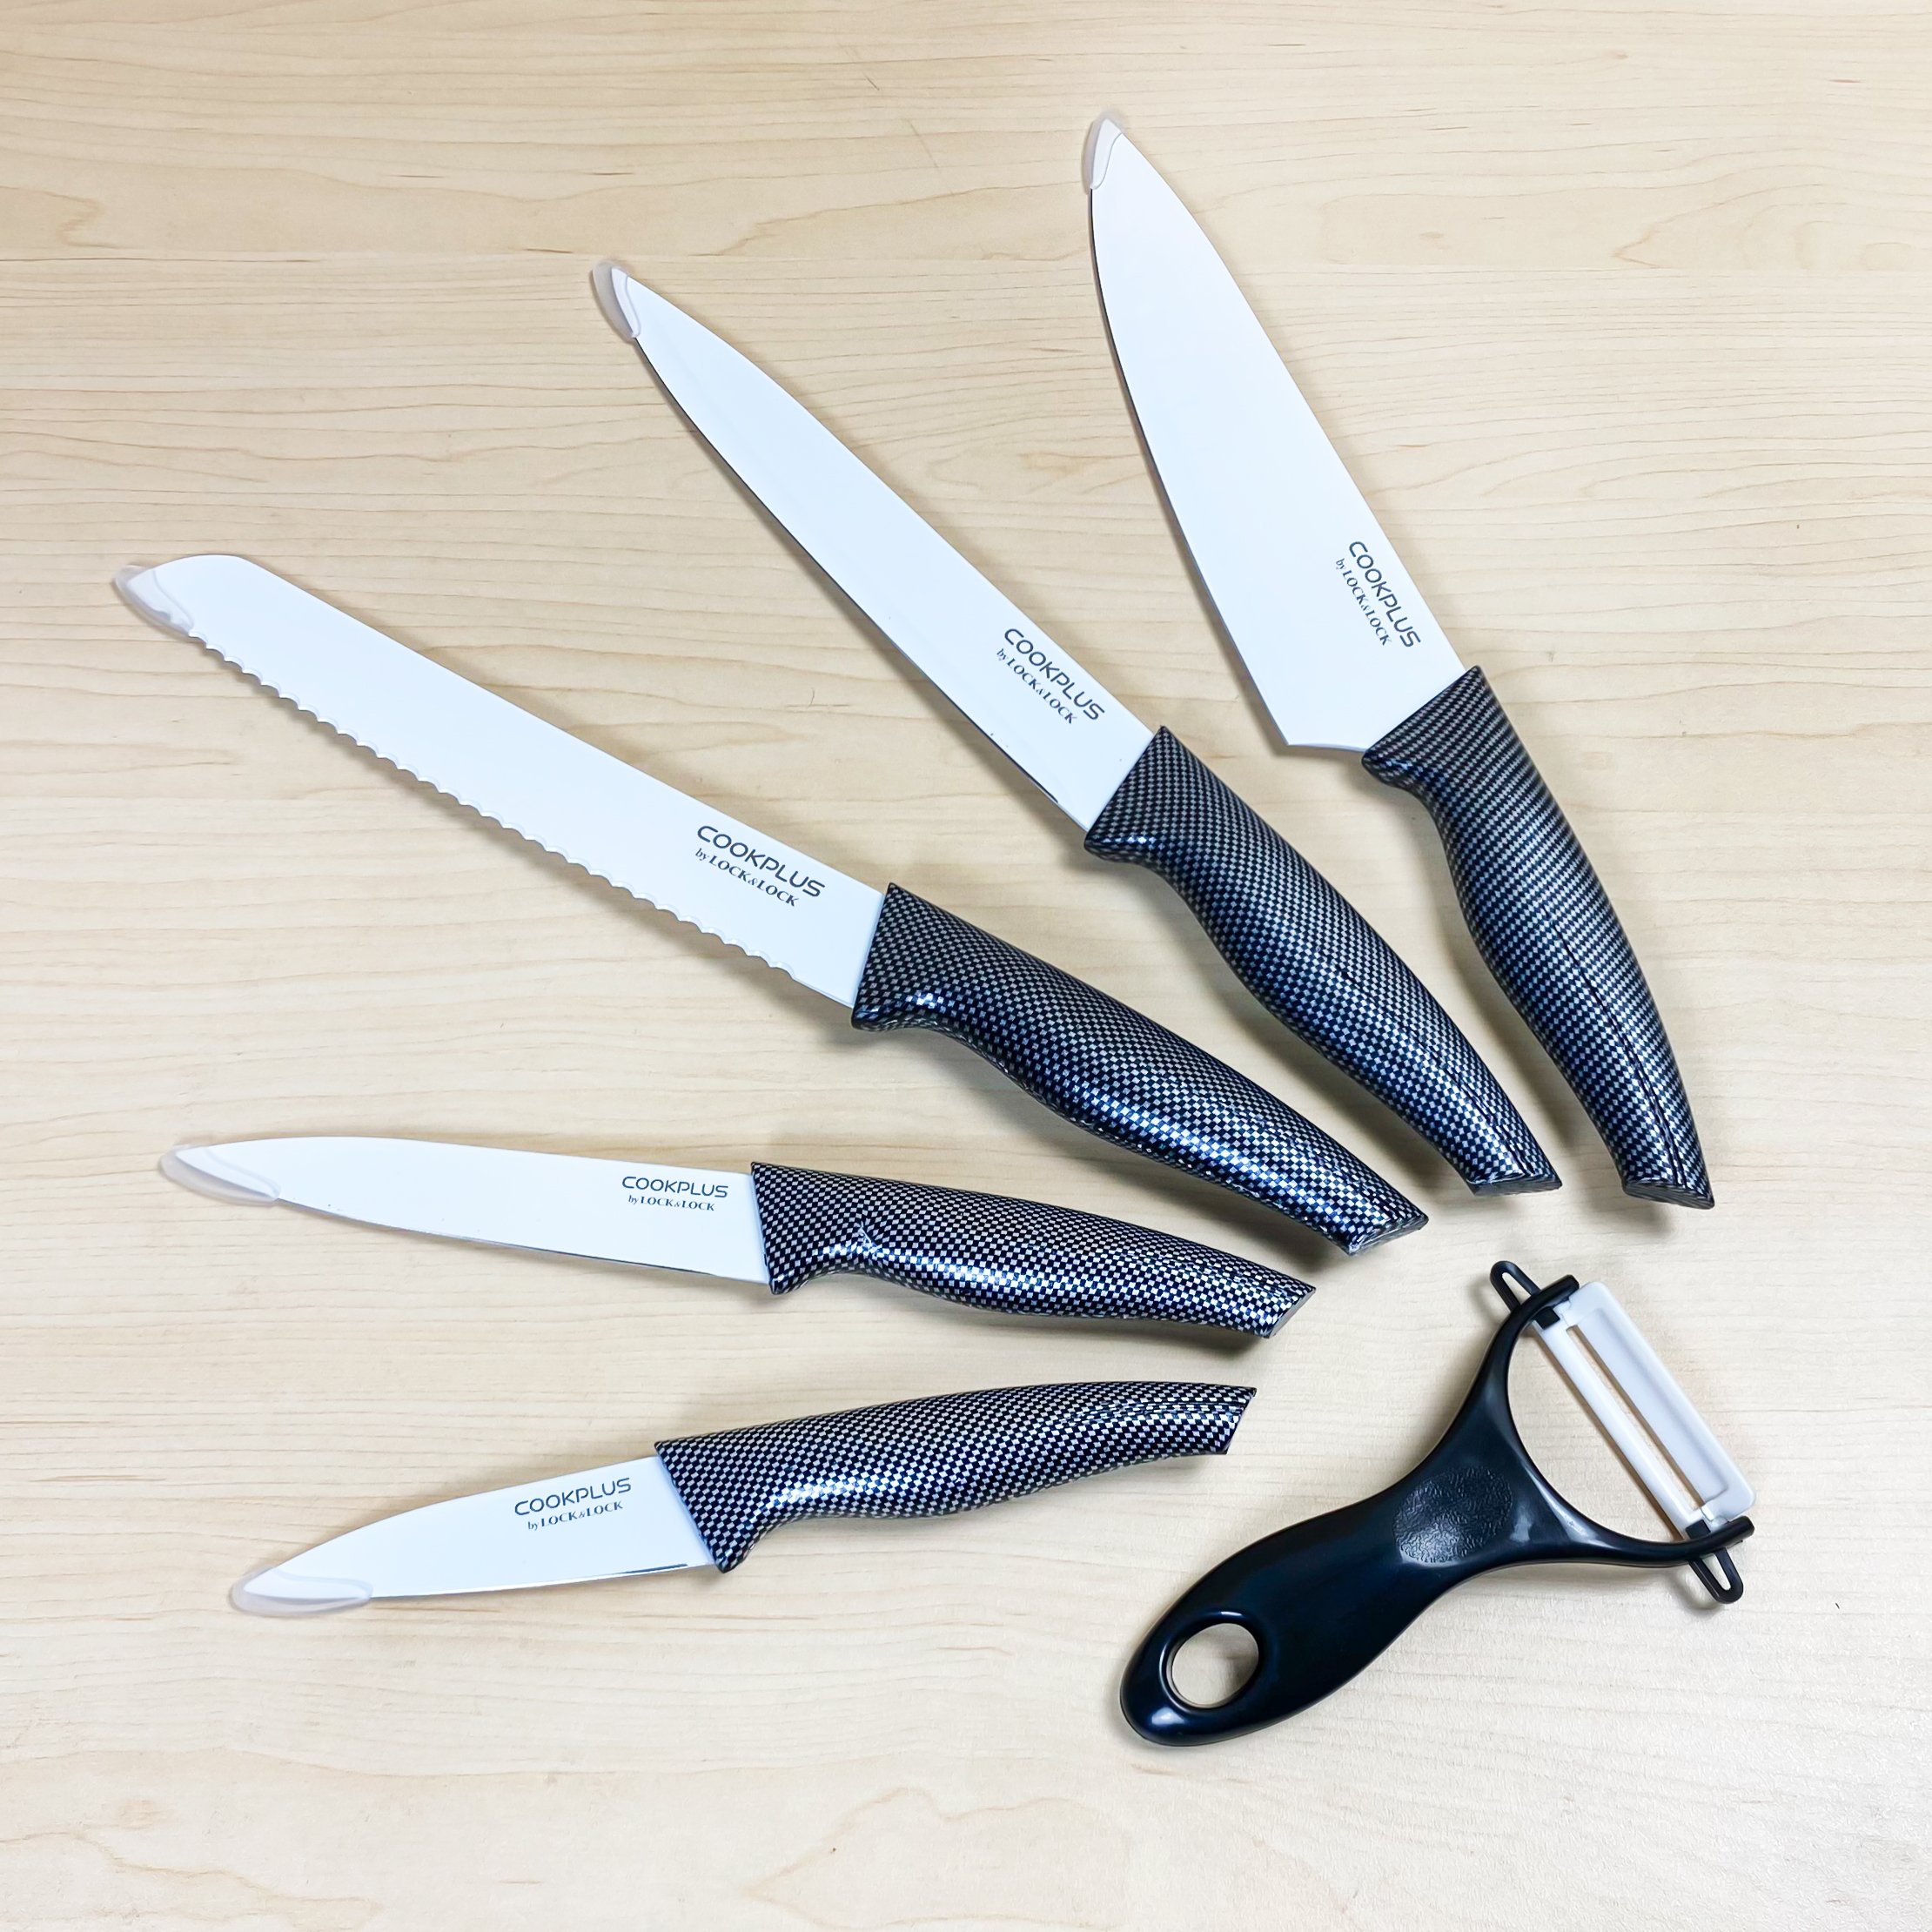 Chưa bao giờ sở hữu một bộ dao nhà bếp chất lượng lại trở nên dễ dàng đến thế! Tận dụng ưu đãi giá tốt và sở hữu bộ dao 6 món đỉnh cao từ nhà sản xuất uy tín để chăm sóc gia đình.